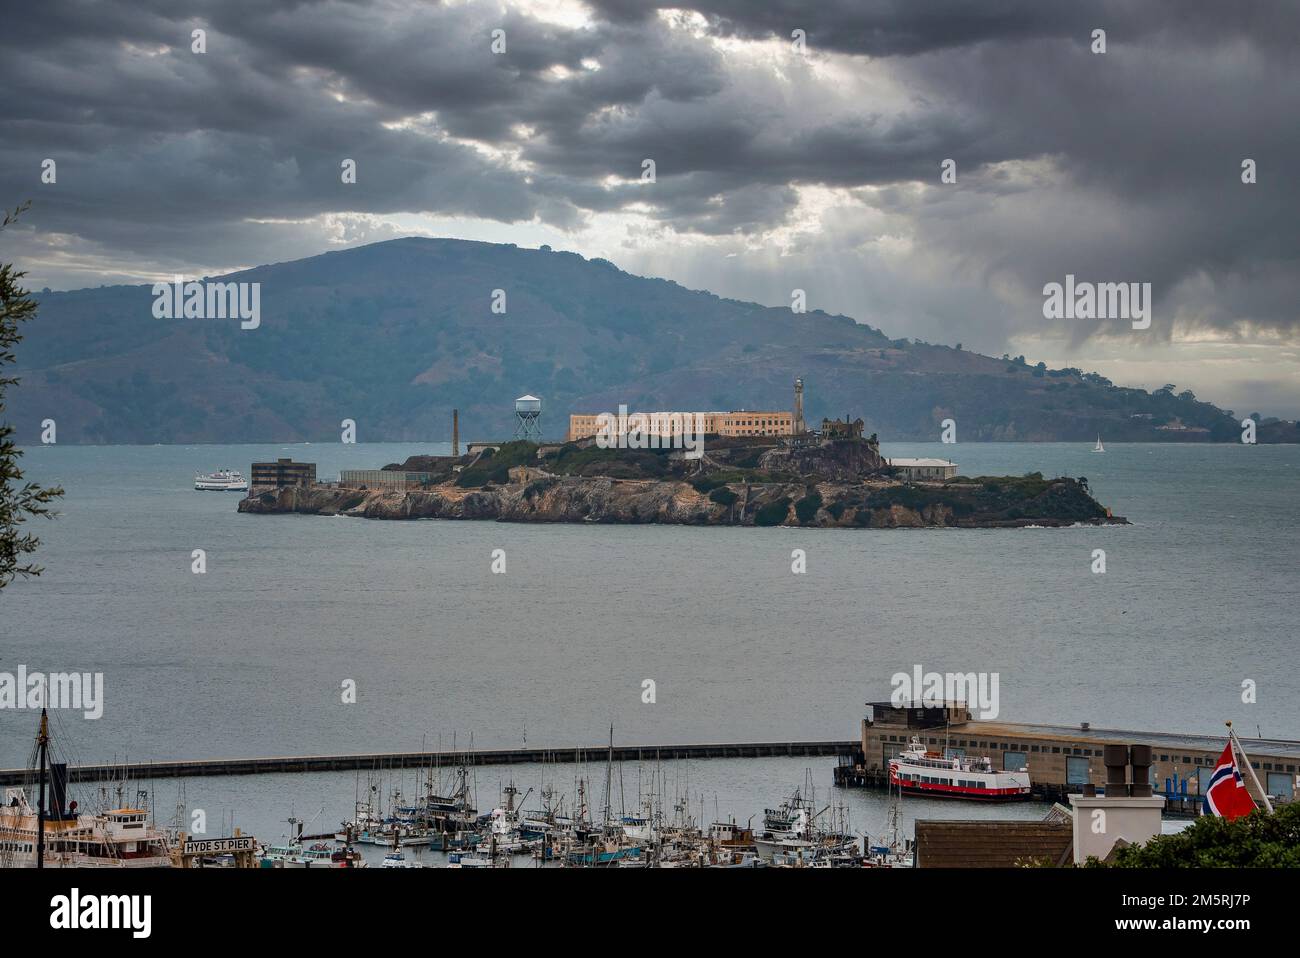 Vue aérienne de l'île d'Alcatraz au milieu de la baie de San Francisco Banque D'Images